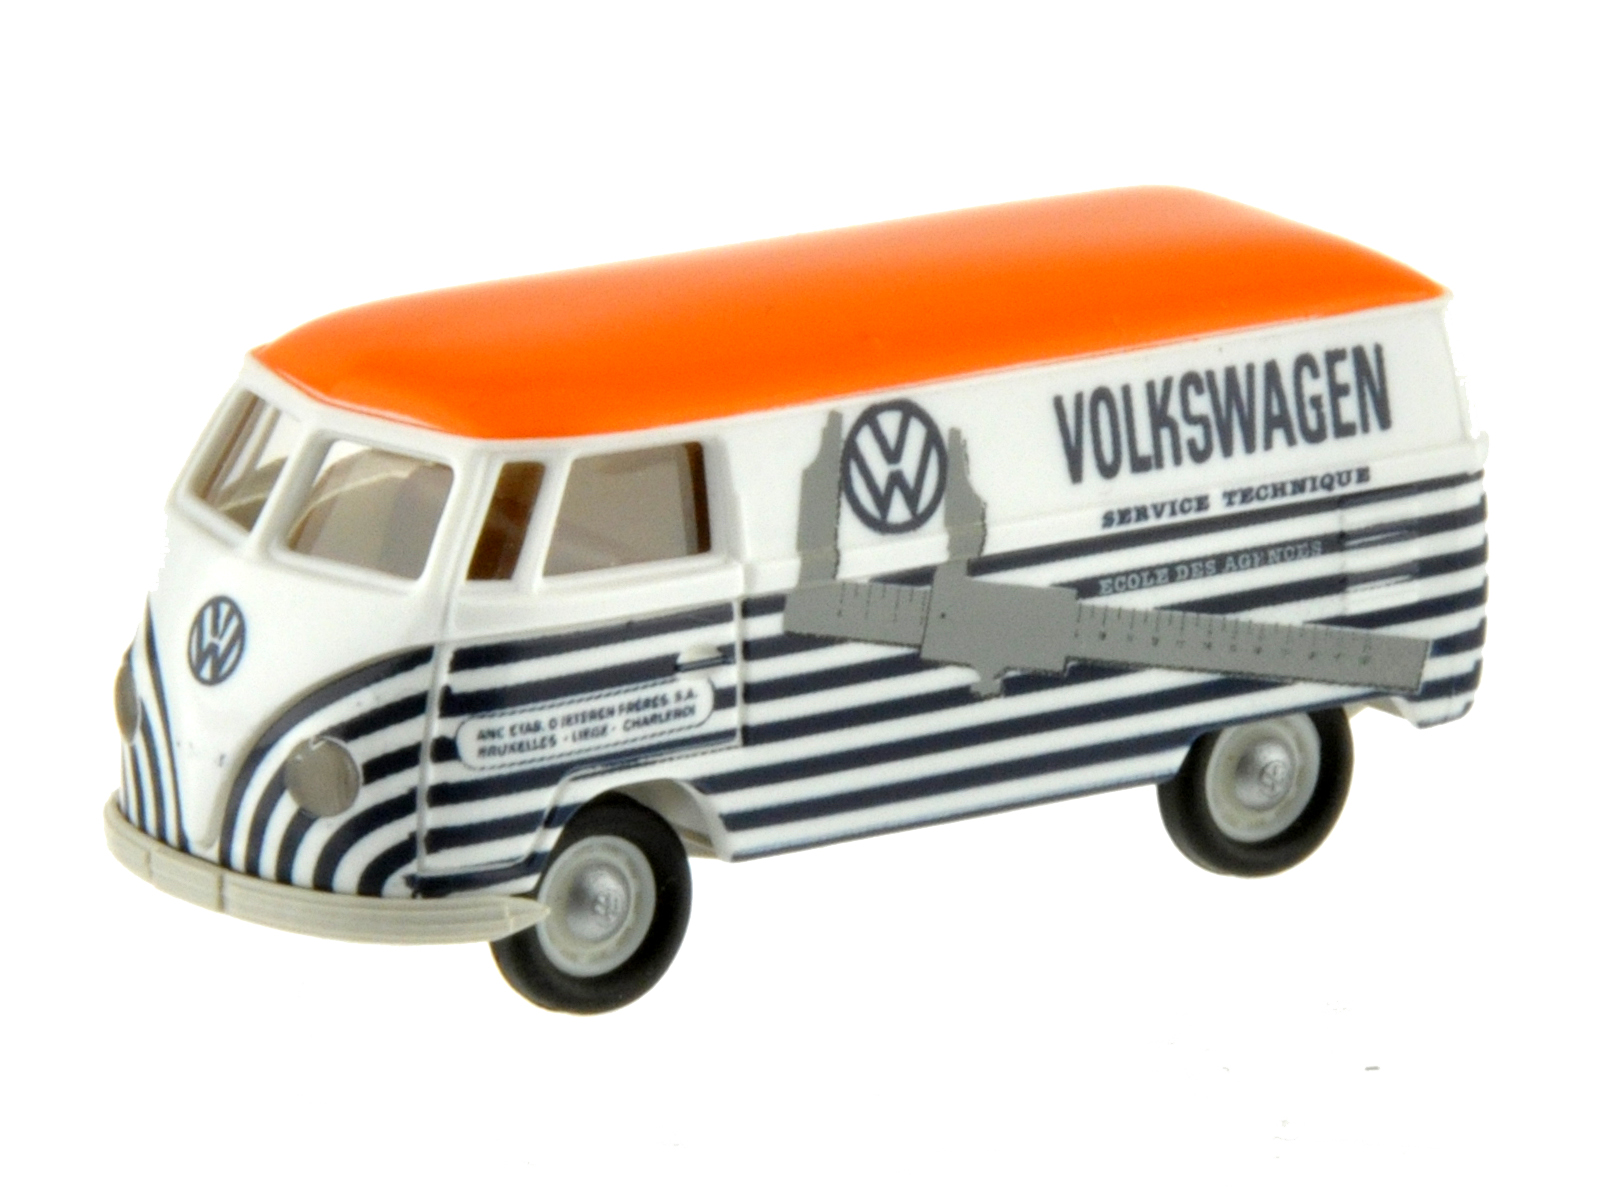 VW T1b Kombi ServiceTechnique Sondermodell Hünerbein limitierte Auflage 200 Stück